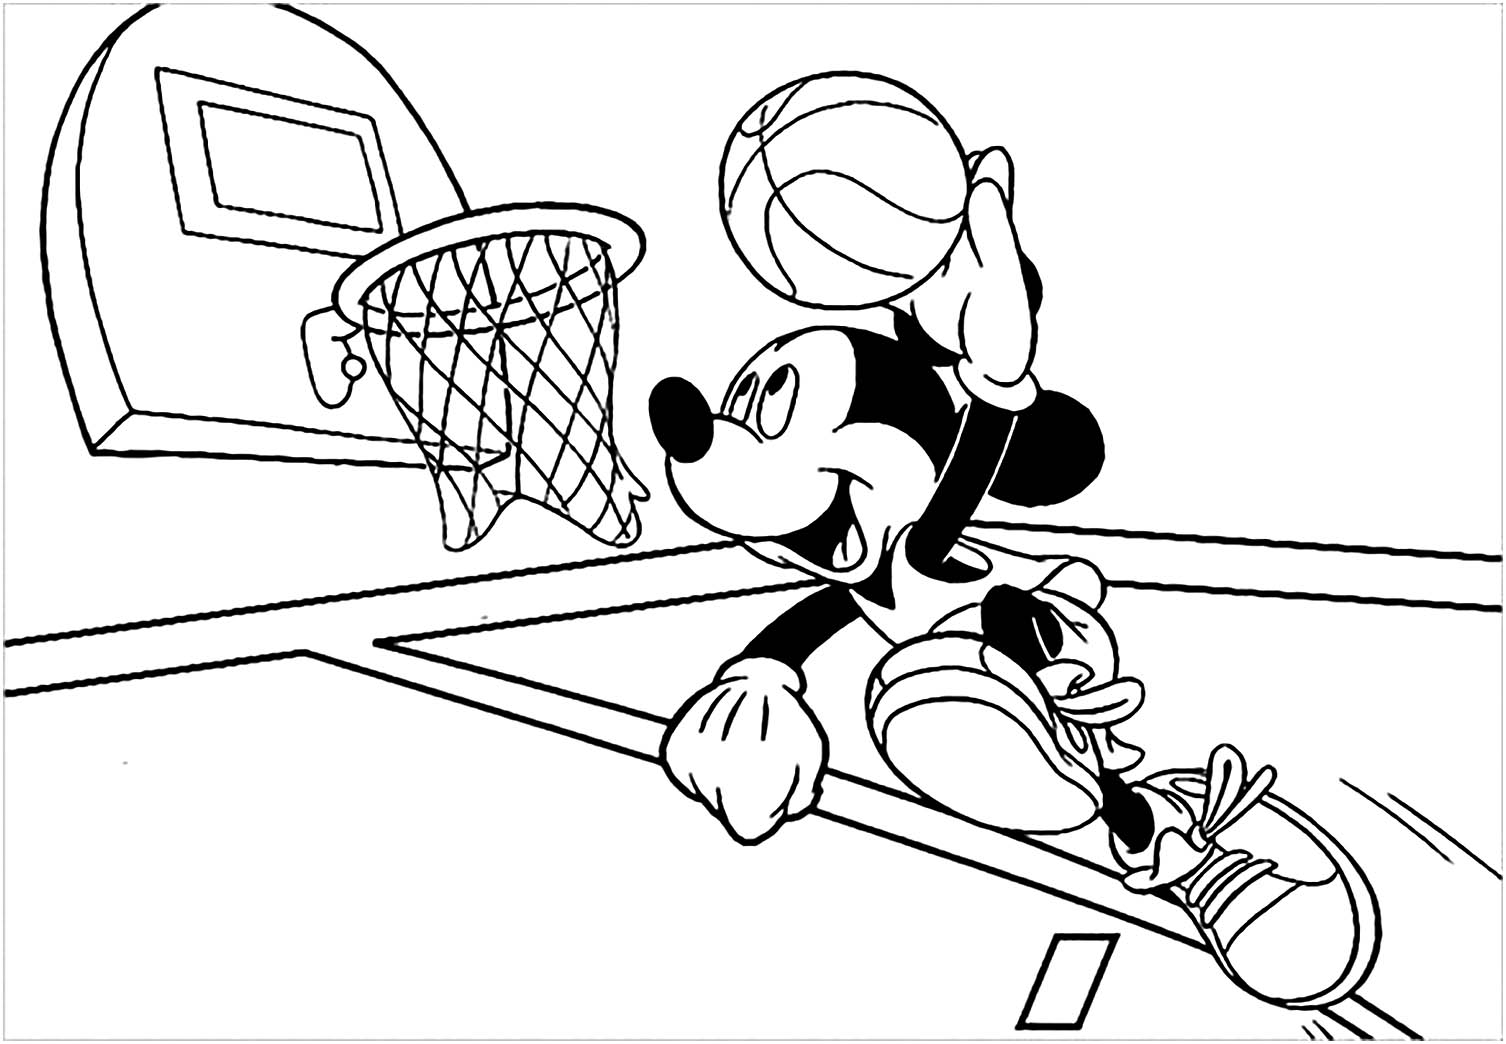 Joli coloriage de basketball simple pour enfants